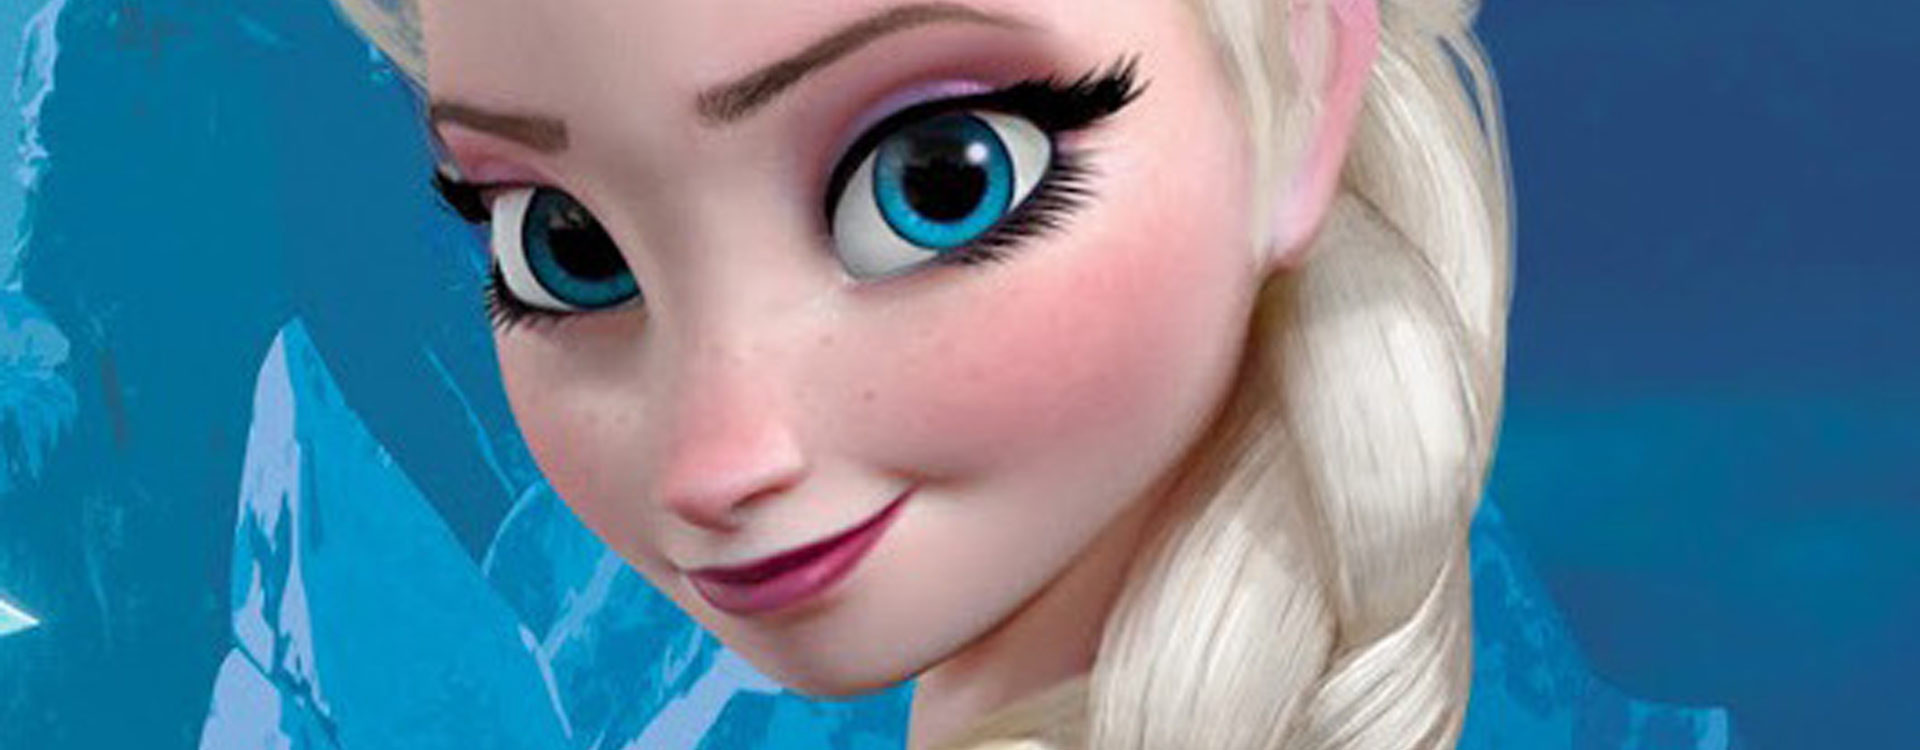 Sven - Portrait du Personnage Disney de La Reine des Neiges